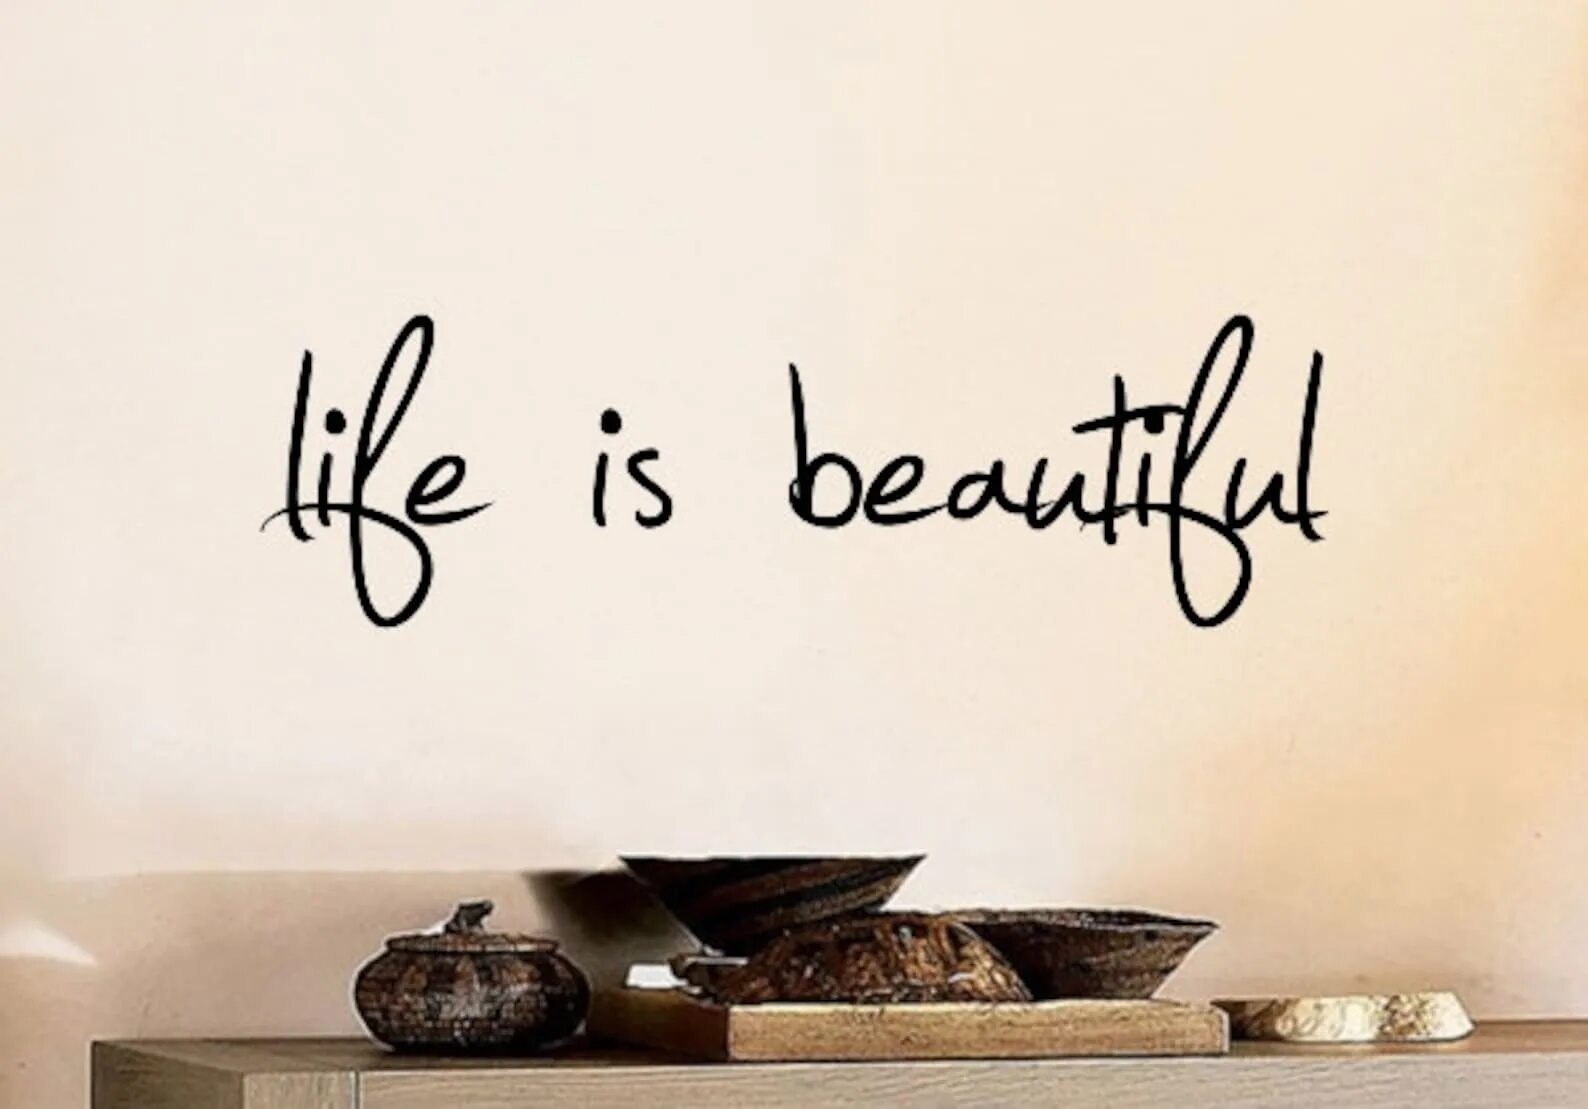 Life is beauty. Life надпись. Жизнь прекрасна надпись. Life is beautiful надпись. Life is beautiful красивая надпись.